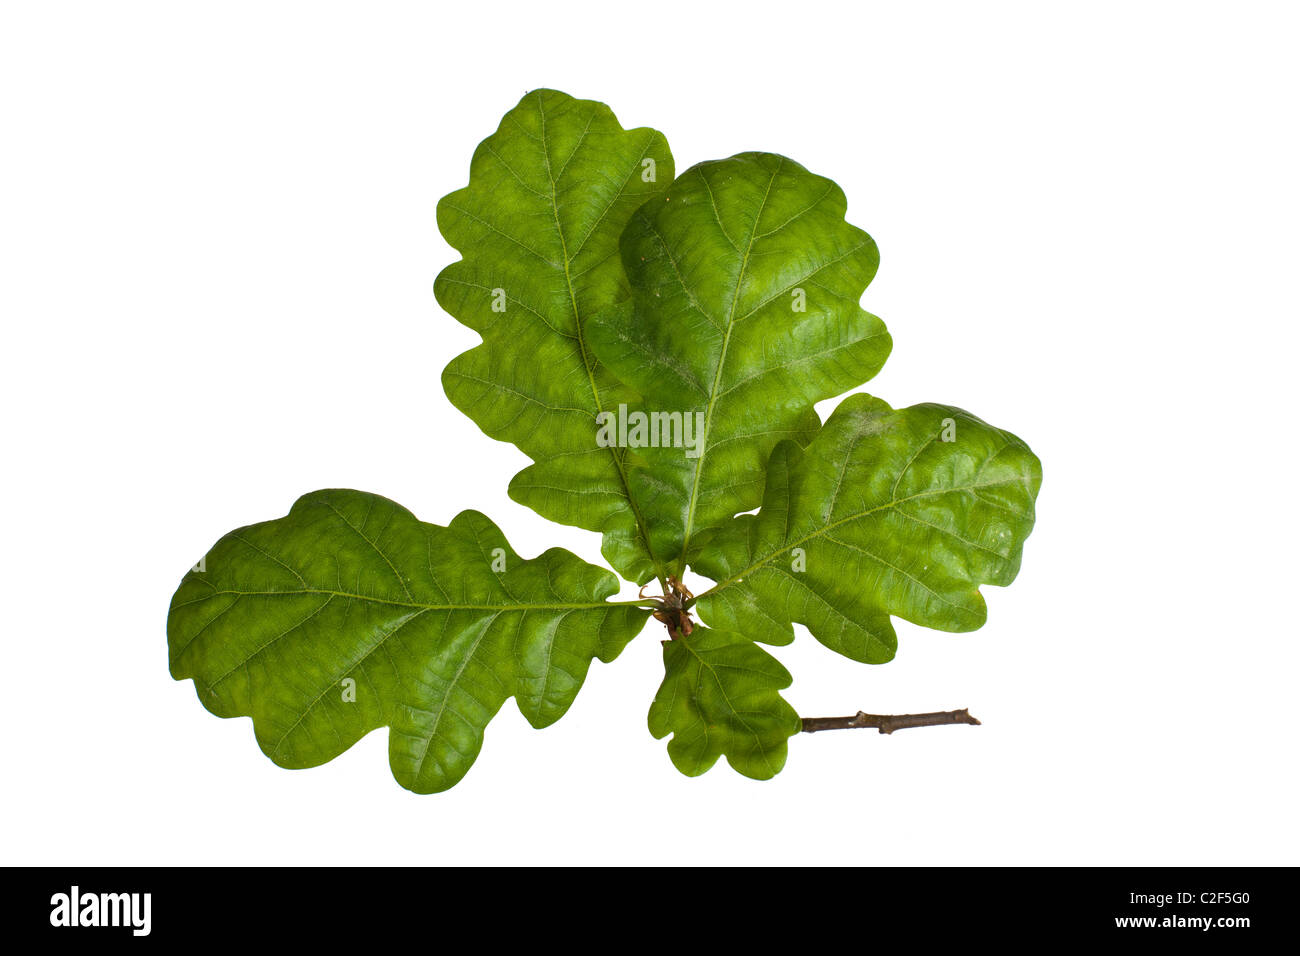 Acorn leaf isolated on white Stock Photo